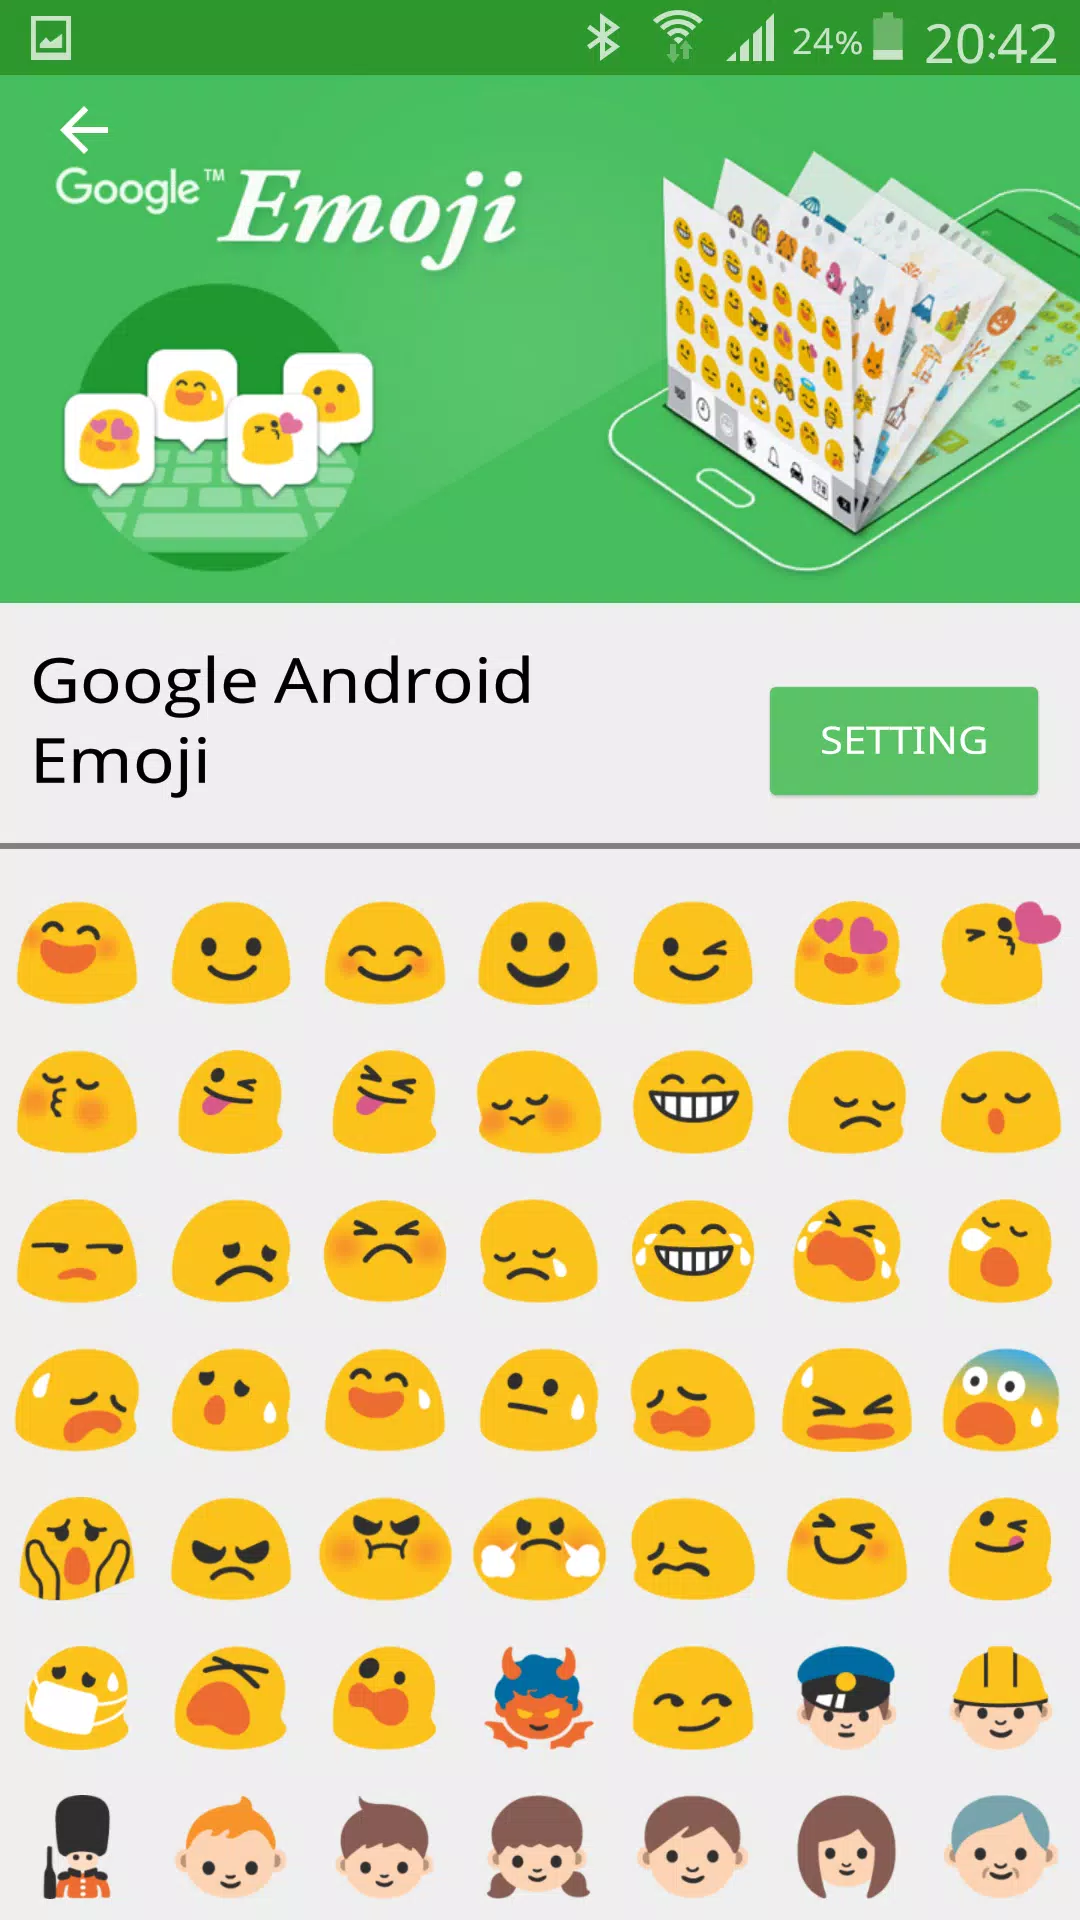 Đừng bỏ lỡ trải nghiệm biểu tượng cảm xúc thú vị trên Android với Emoji Font Pro. Ứng dụng này sẽ đem lại cho bạn hàng ngàn biểu tượng cảm xúc mới và tràn đầy sáng tạo để thể hiện tình cảm của mình.